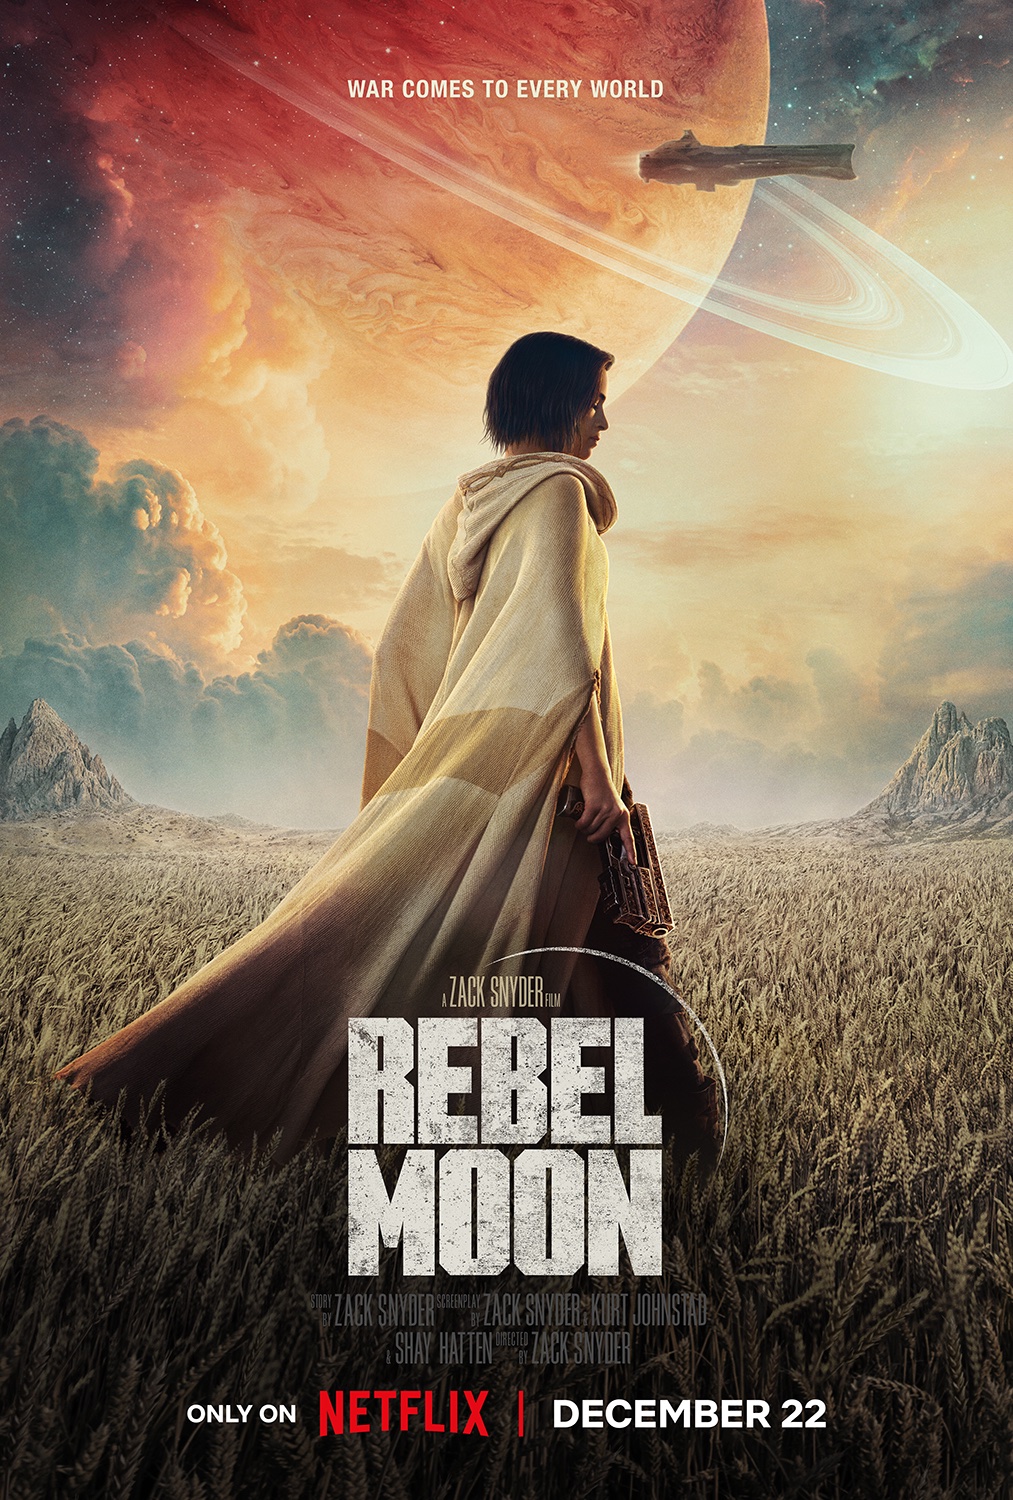 Novas imagens do filme de ficção científica Rebel Moon de Zack Snyder  reveladas - Rebel Moon - Part One: A Child of Fire - Gamereactor